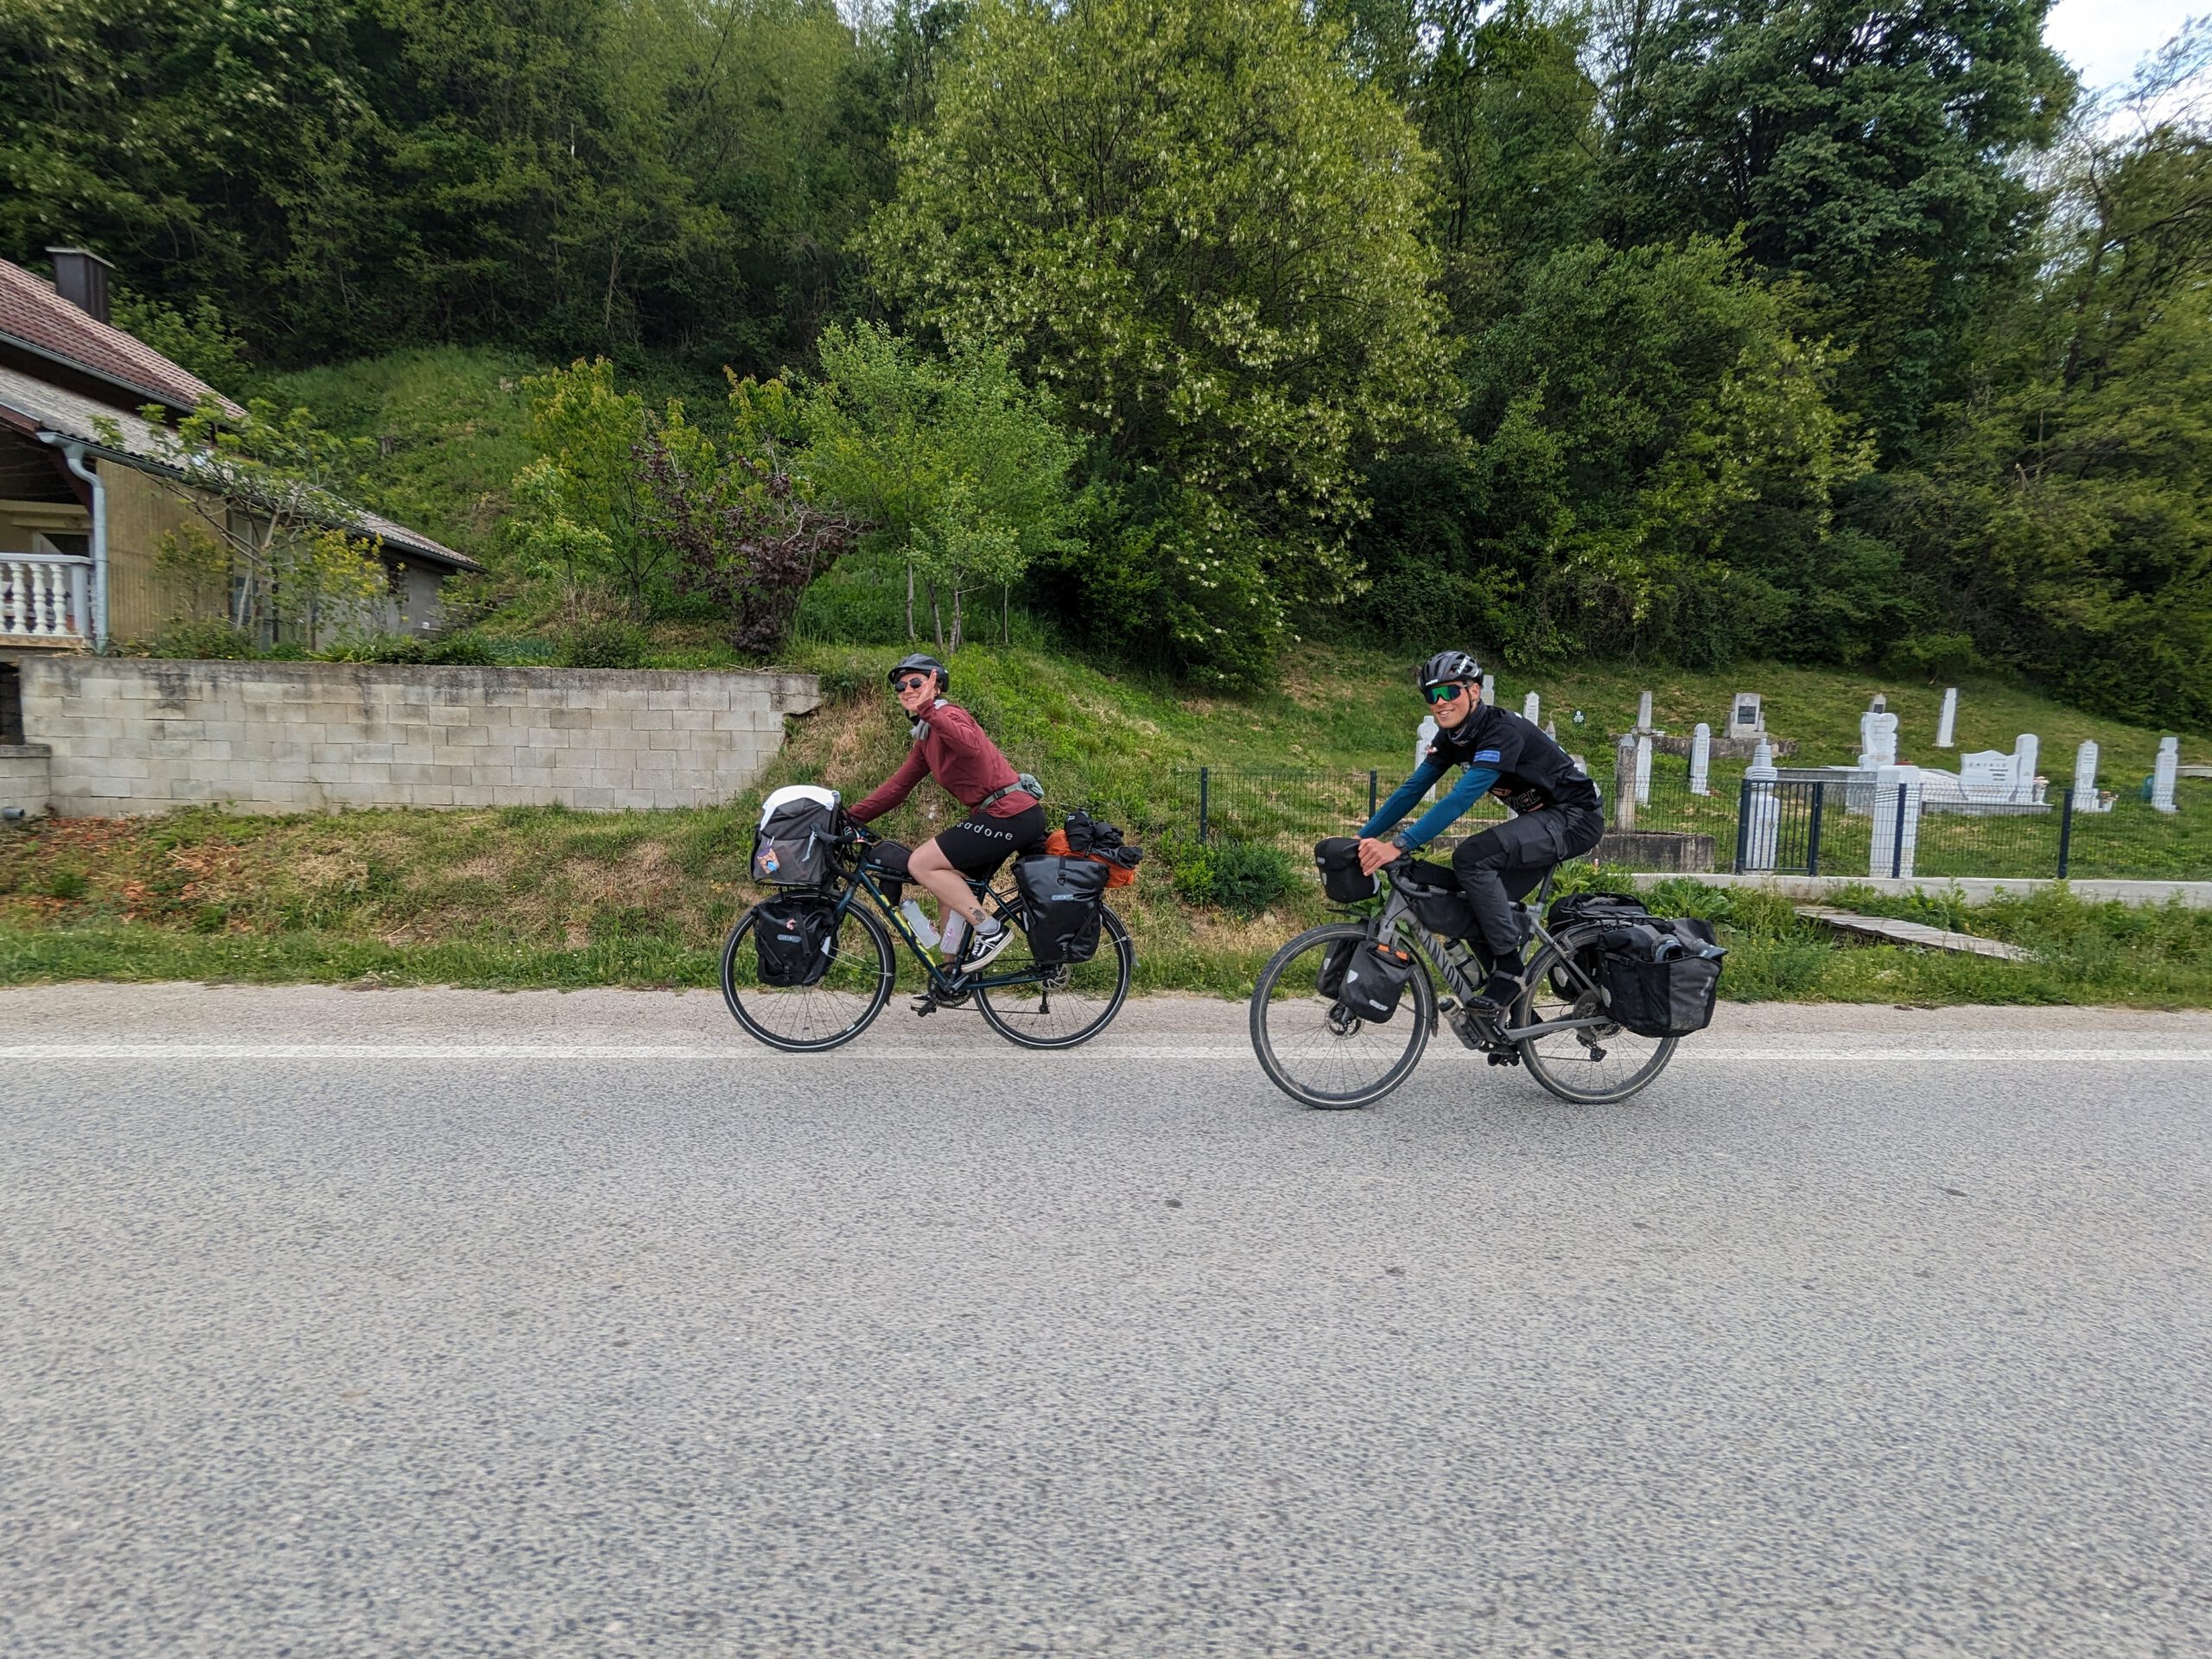 Bikkels on Bikes fietsen samen met Sien door Bosnië!